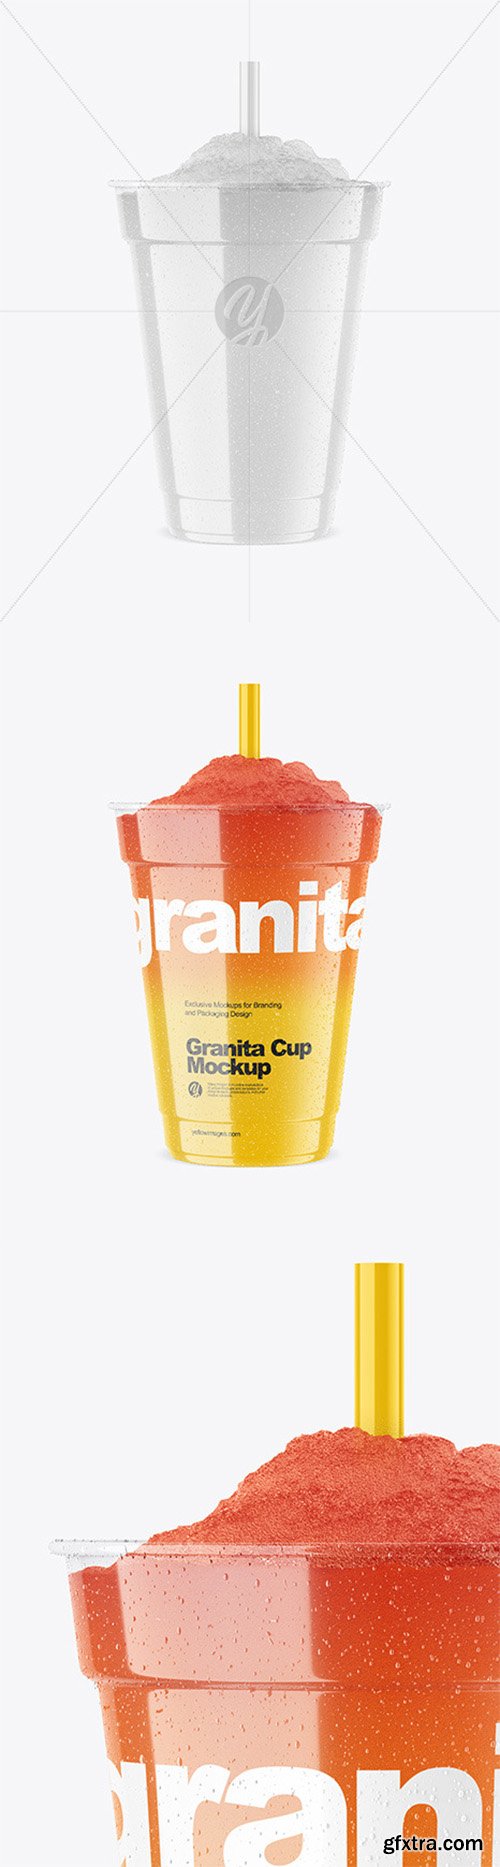 Granita Cup Mockup 65050